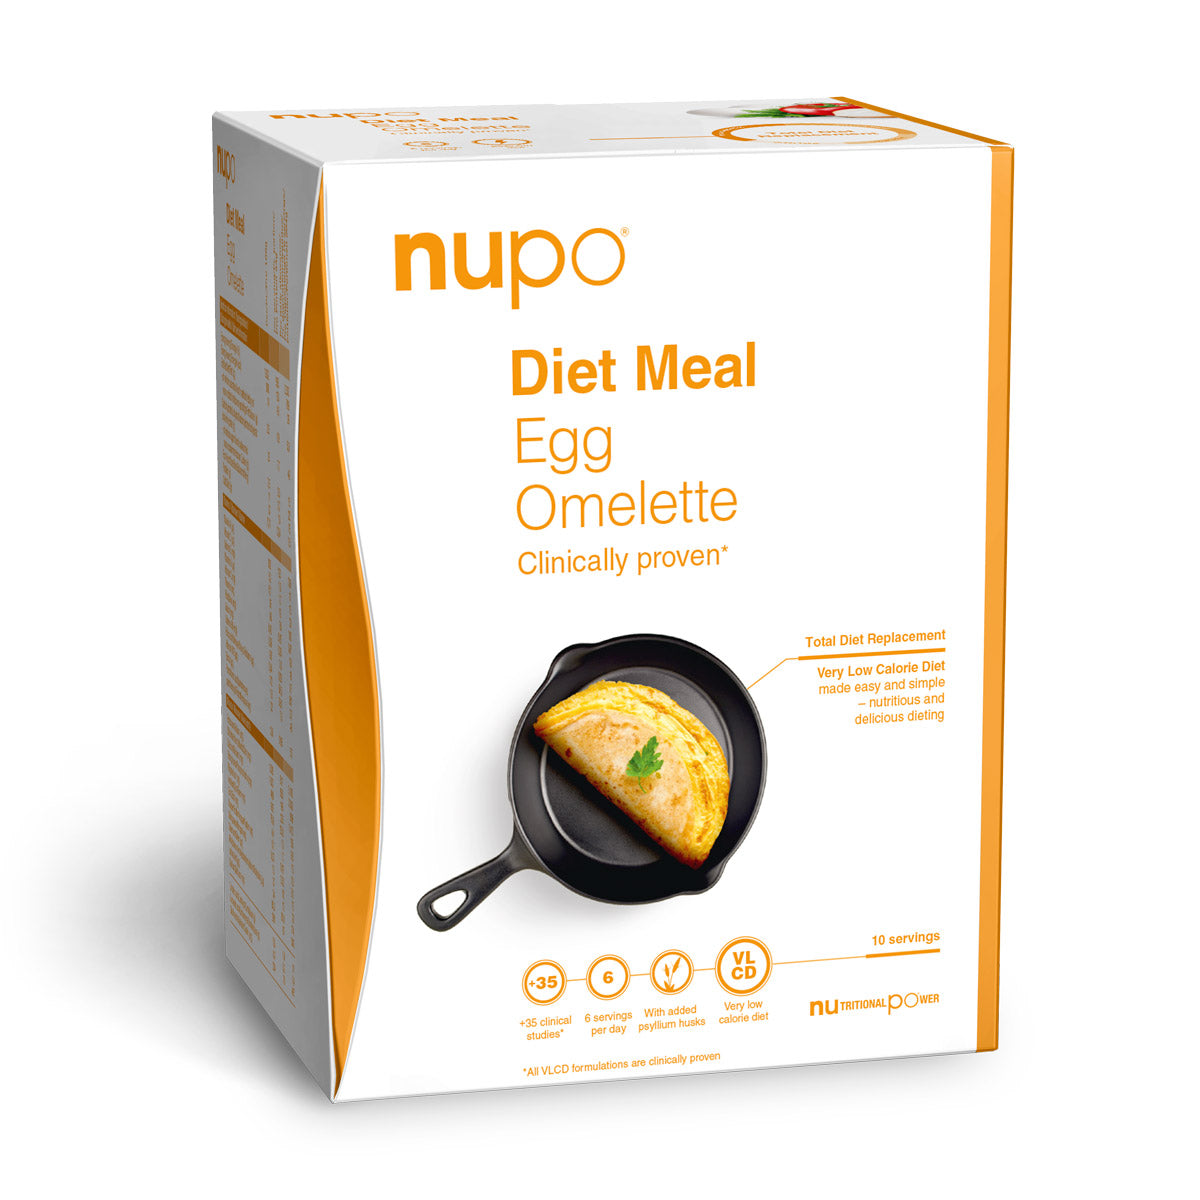 Brug Nupo Diet Meal (340g) - Egg Omelet til en forbedret oplevelse